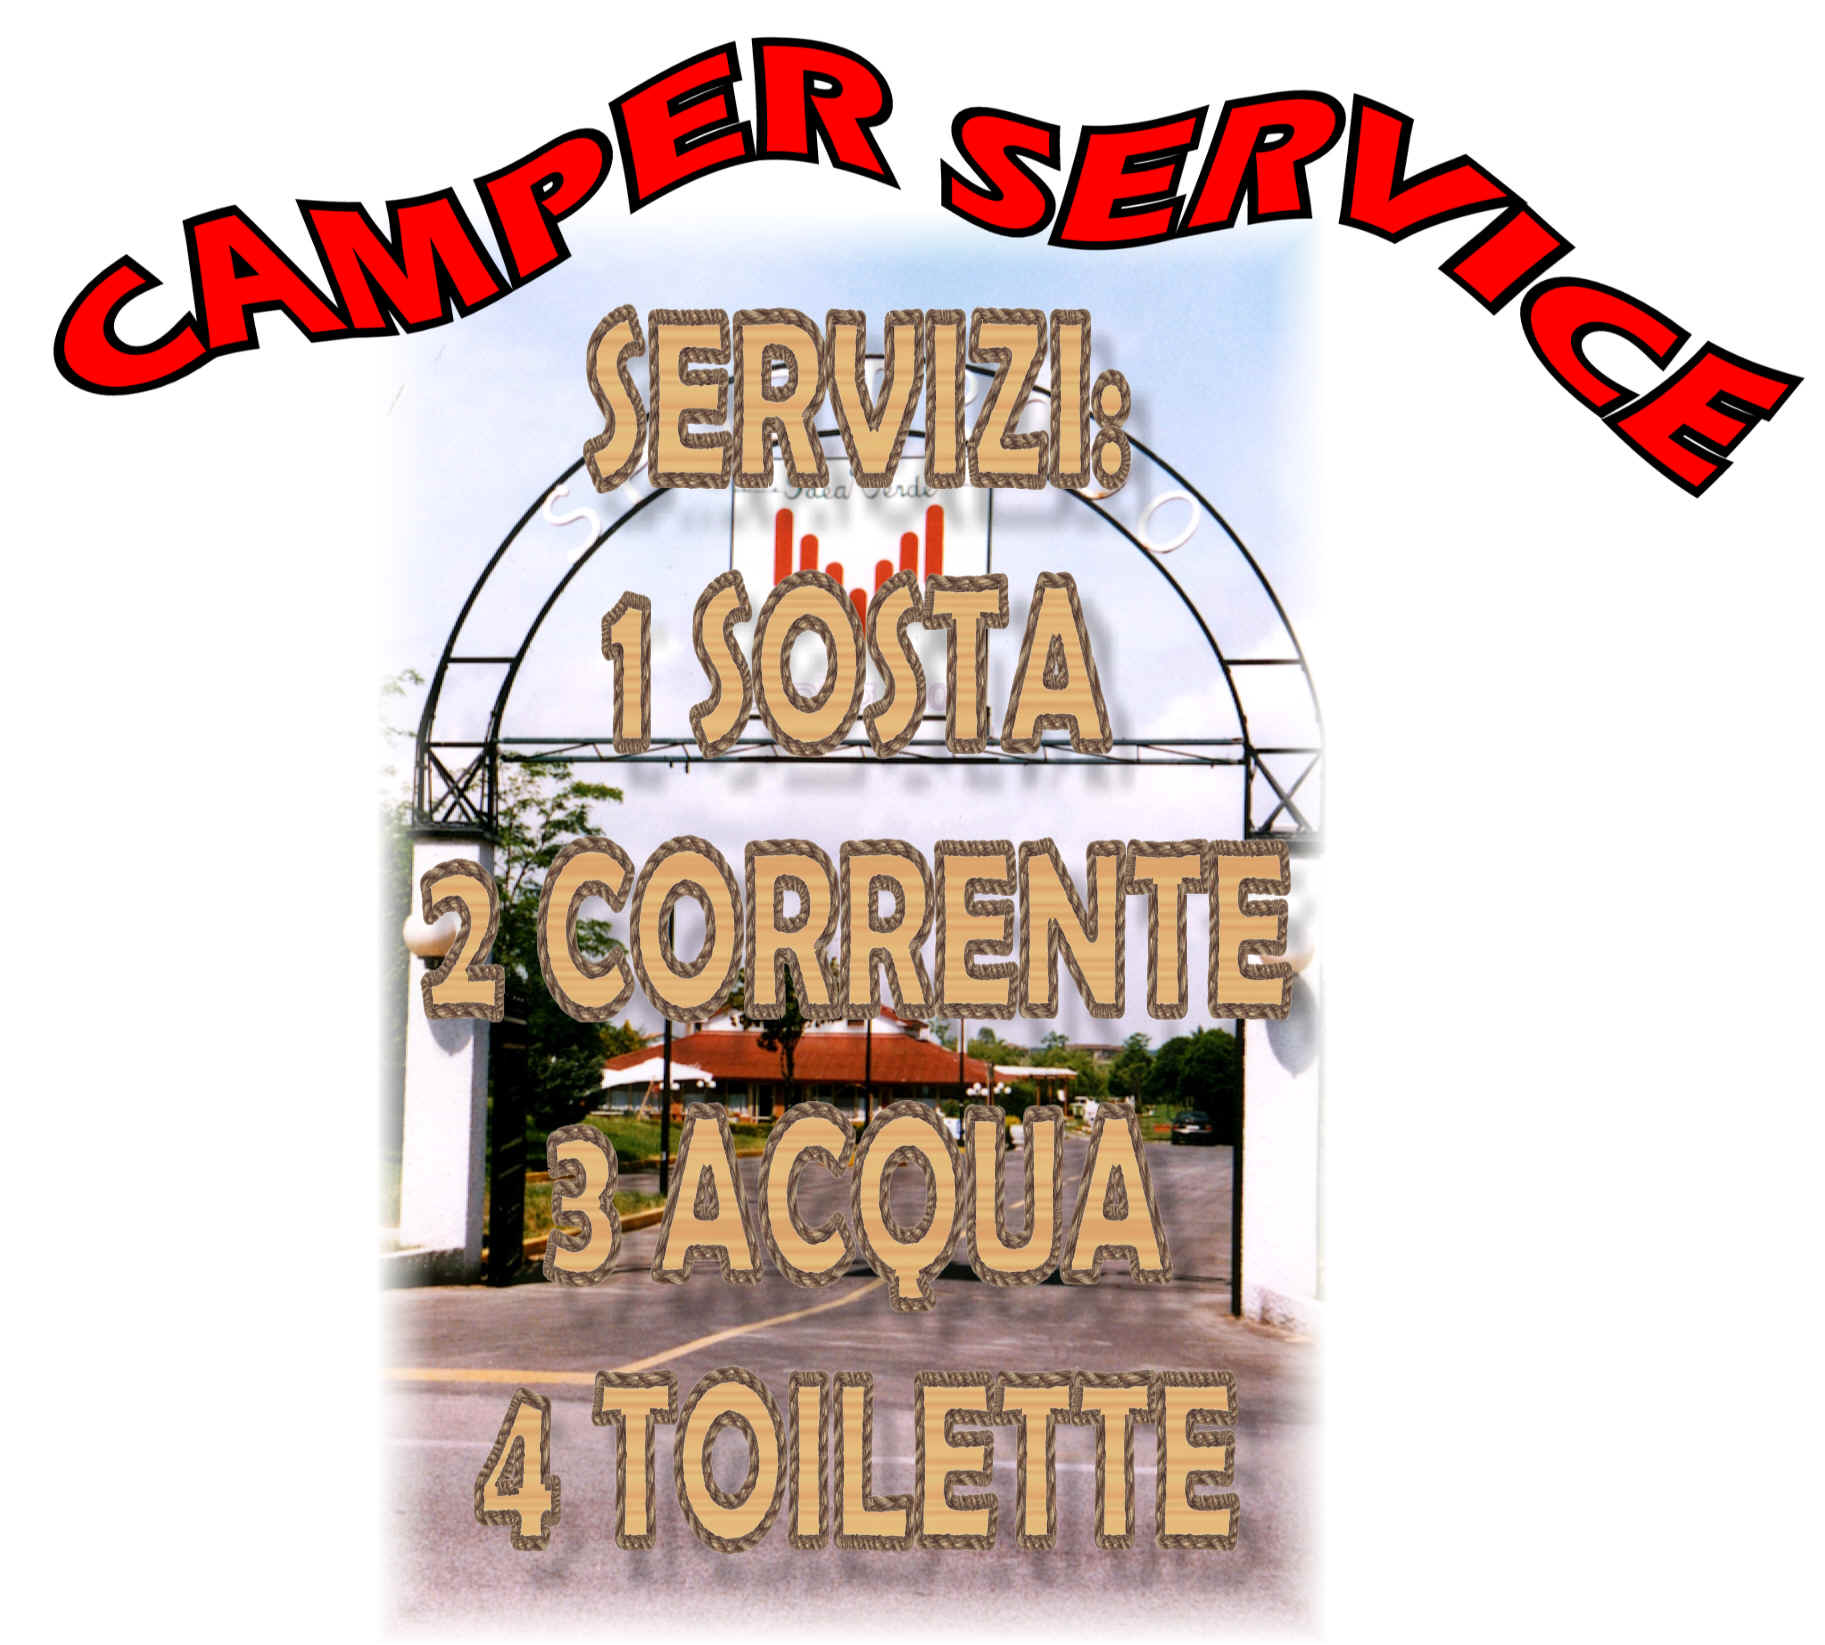 Camper Service